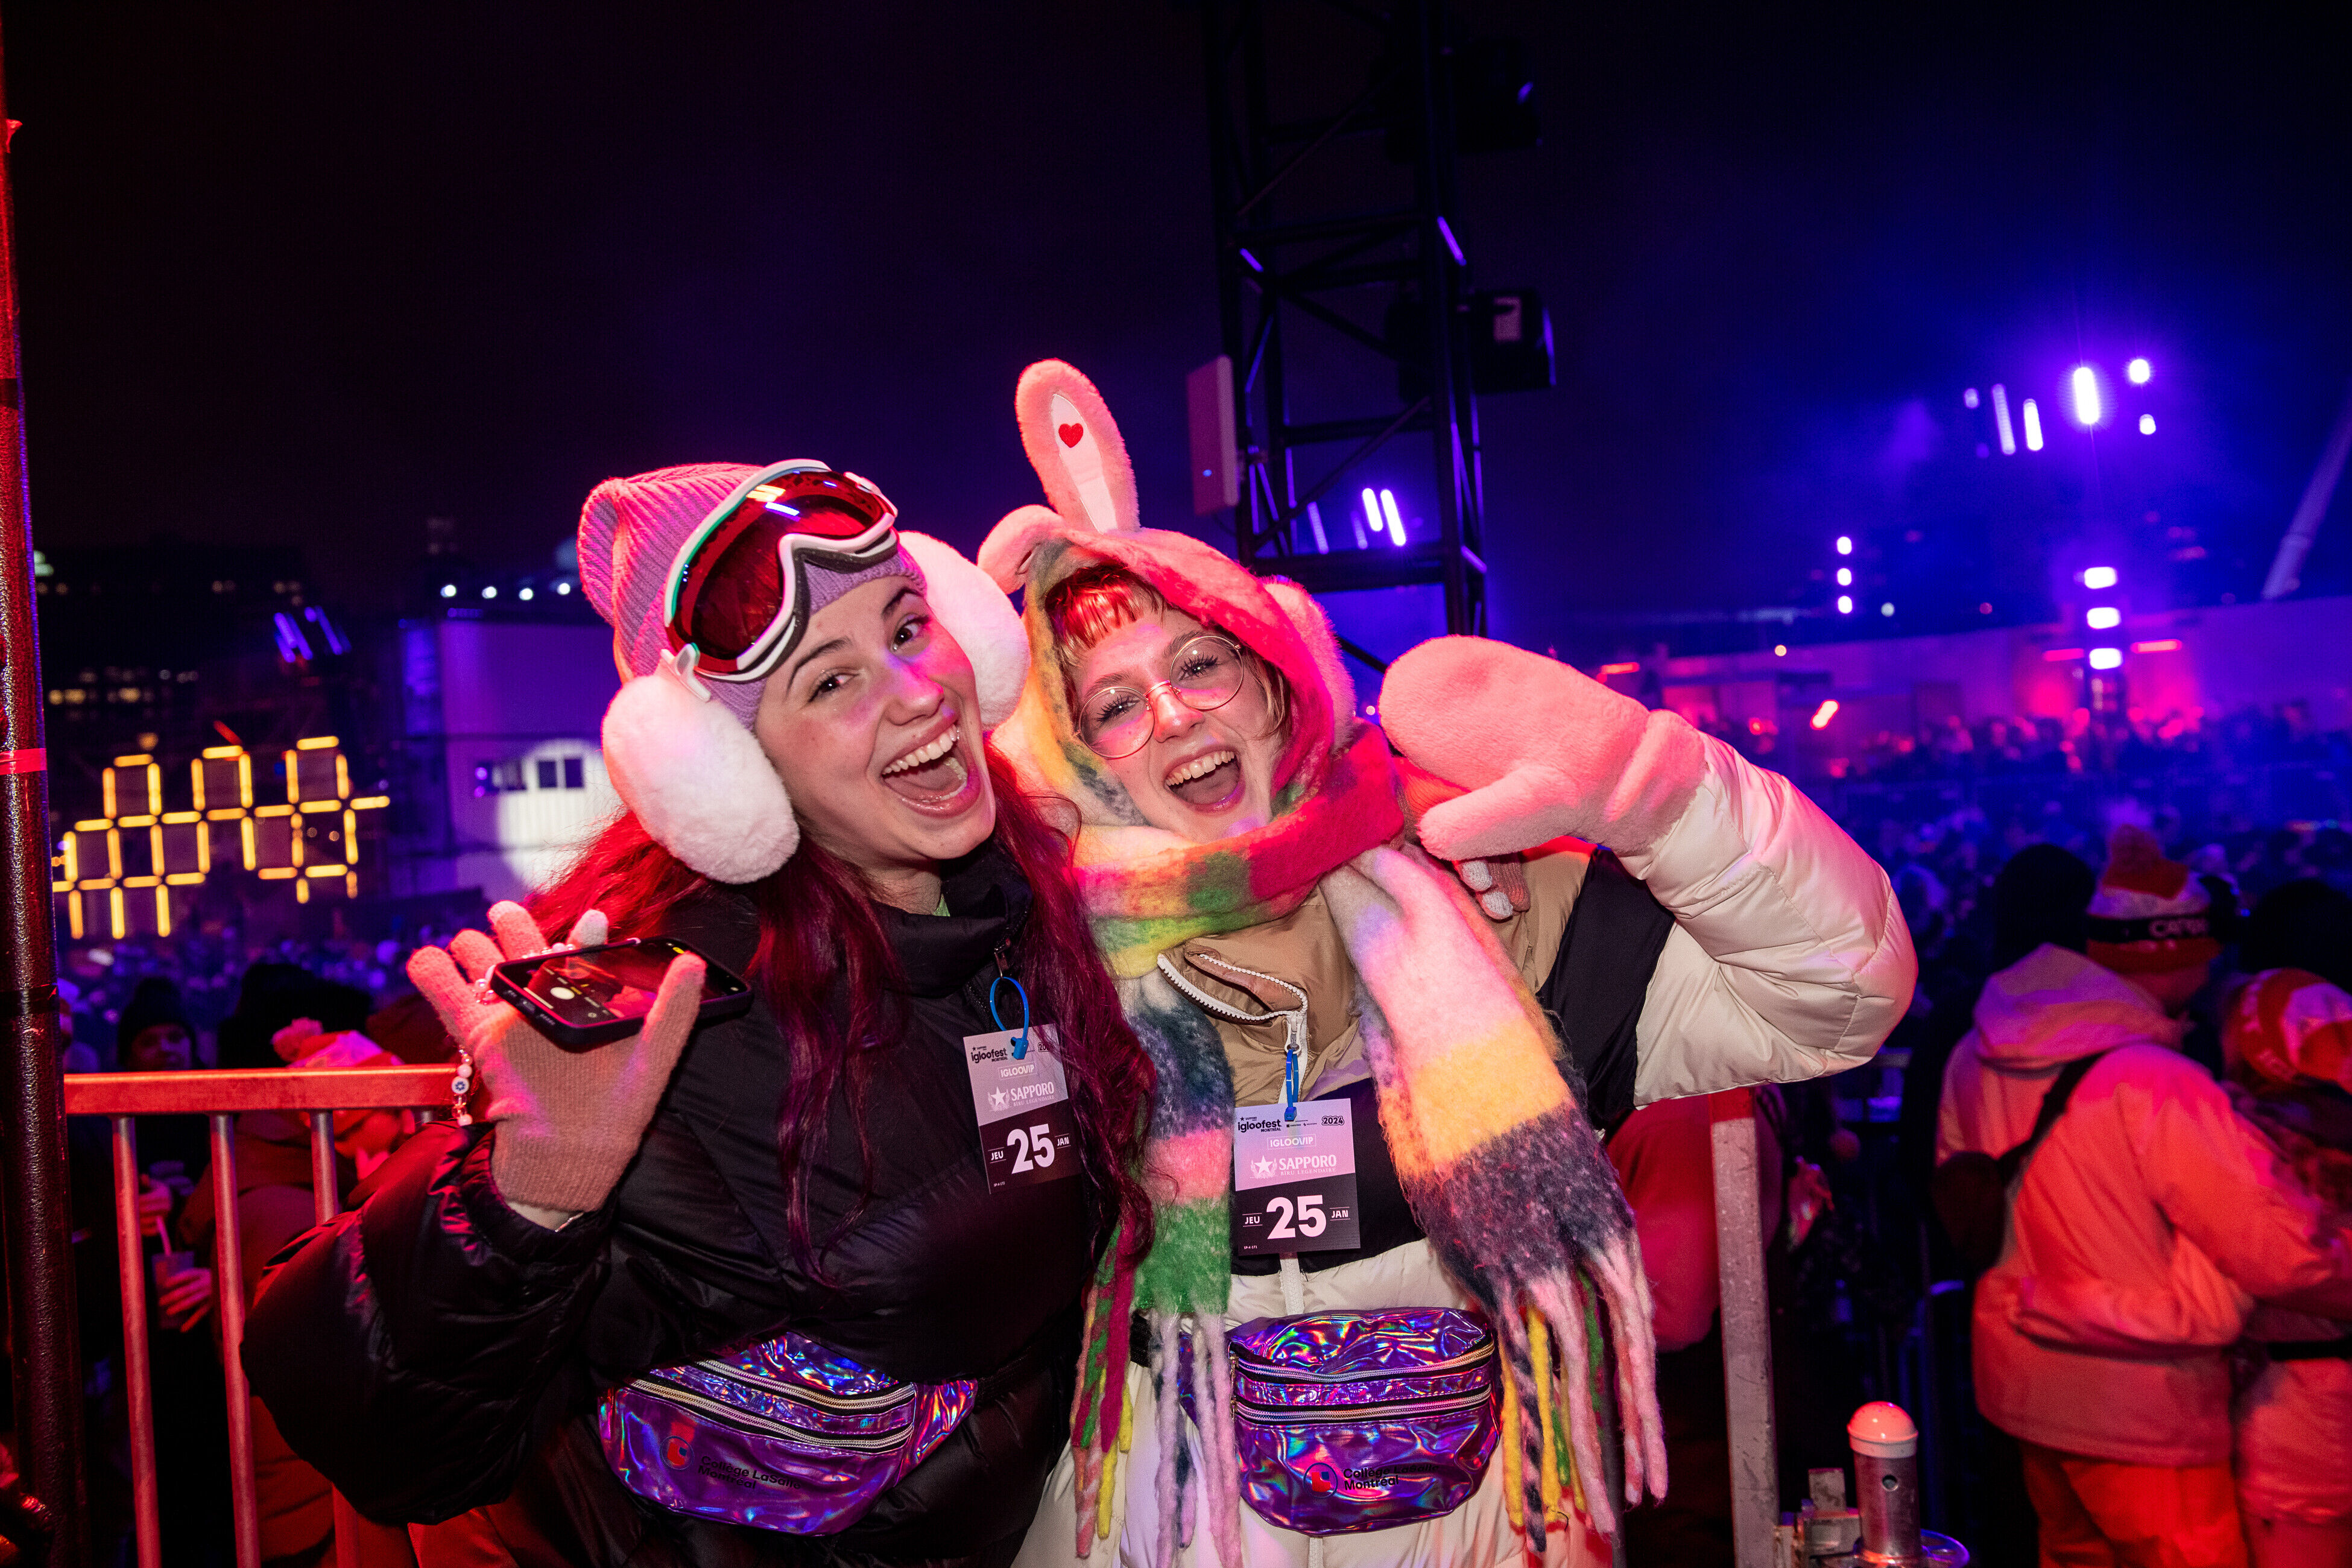 Deux femmes en tenues d'hiver éclatantes, l'une avec des lunettes de ski et des cache-oreilles, l'autre avec une écharpe colorée, sourient joyeusement lors d'un événement nocturne en plein air.